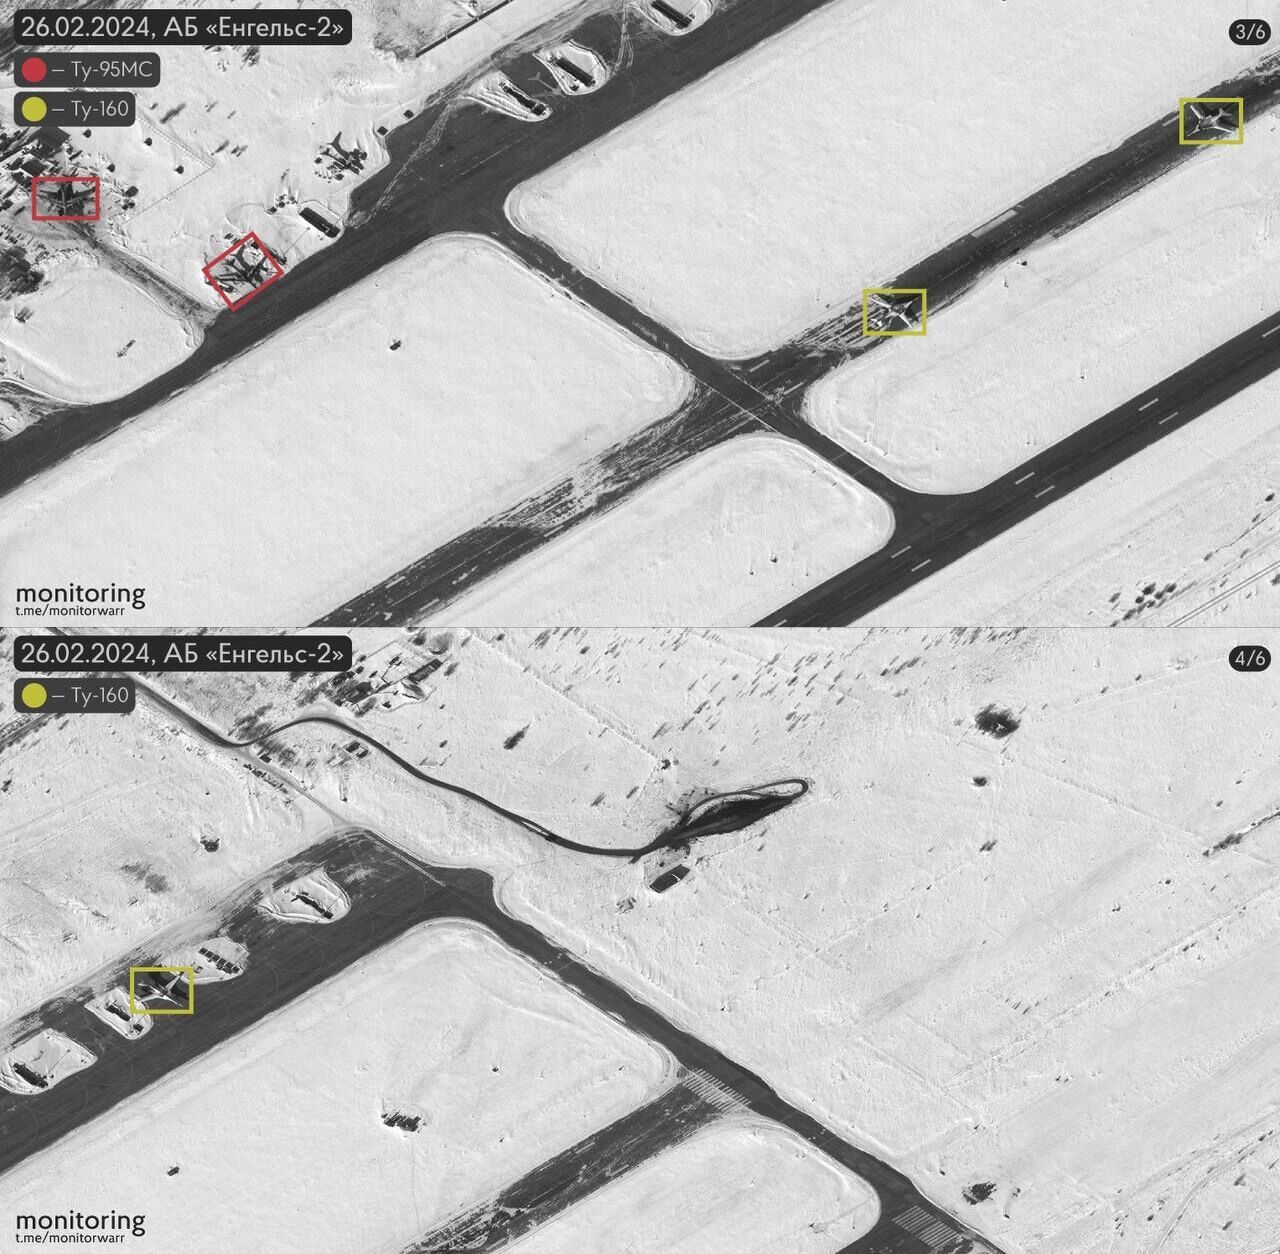 Восемь самолетов было, четыре добавилось: появились спутниковые снимки аэродрома "Энгельс-2" в России. Фото